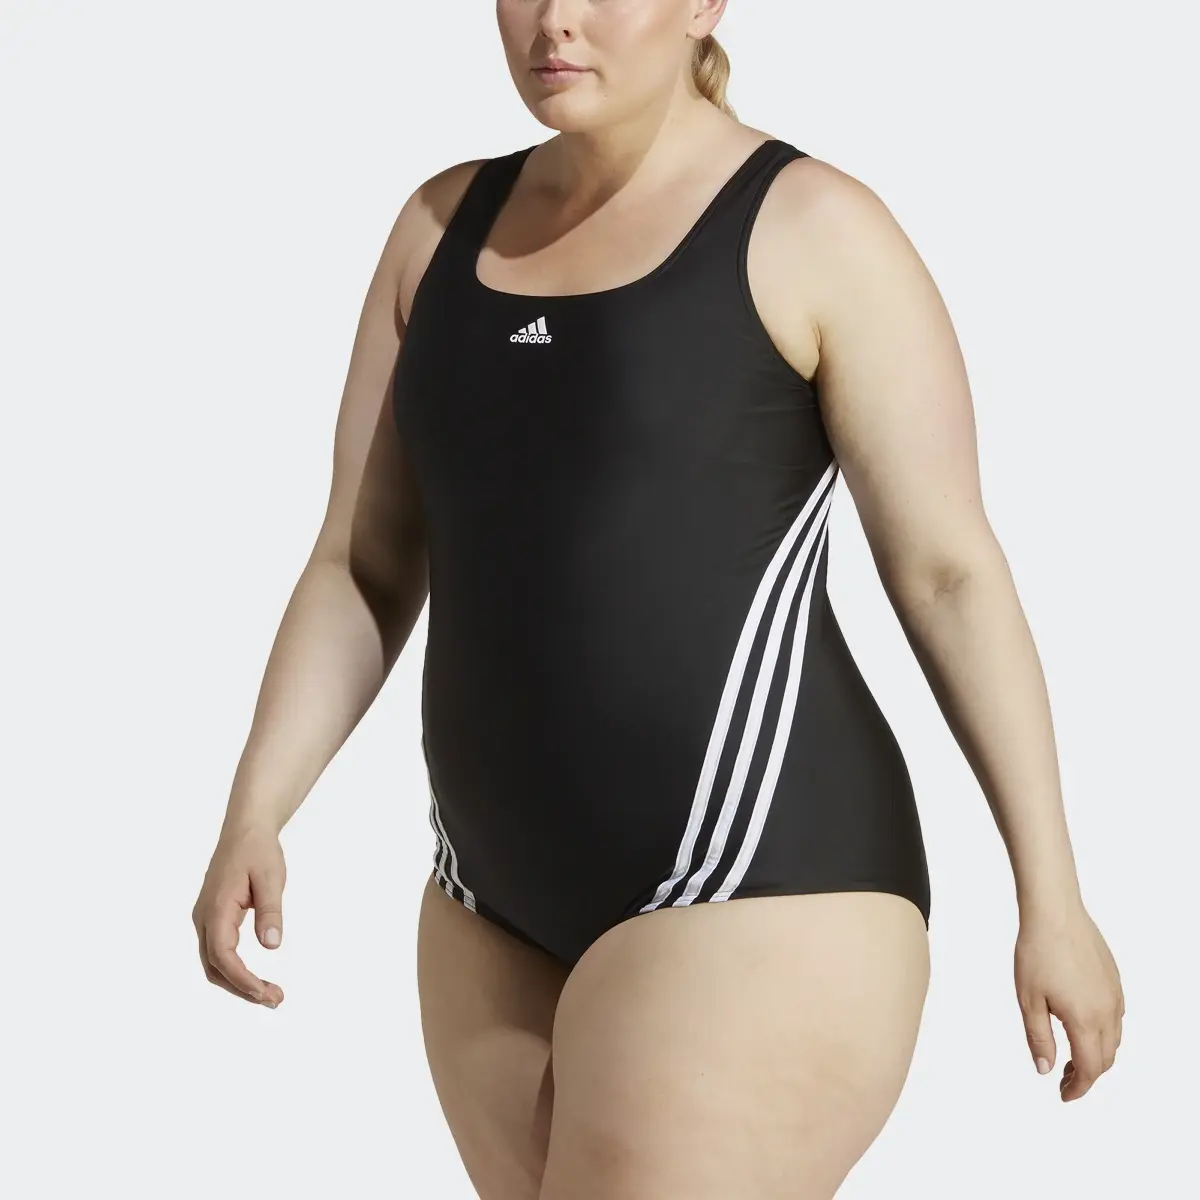 Adidas 3-Streifen Badeanzug – Große Größen. 1